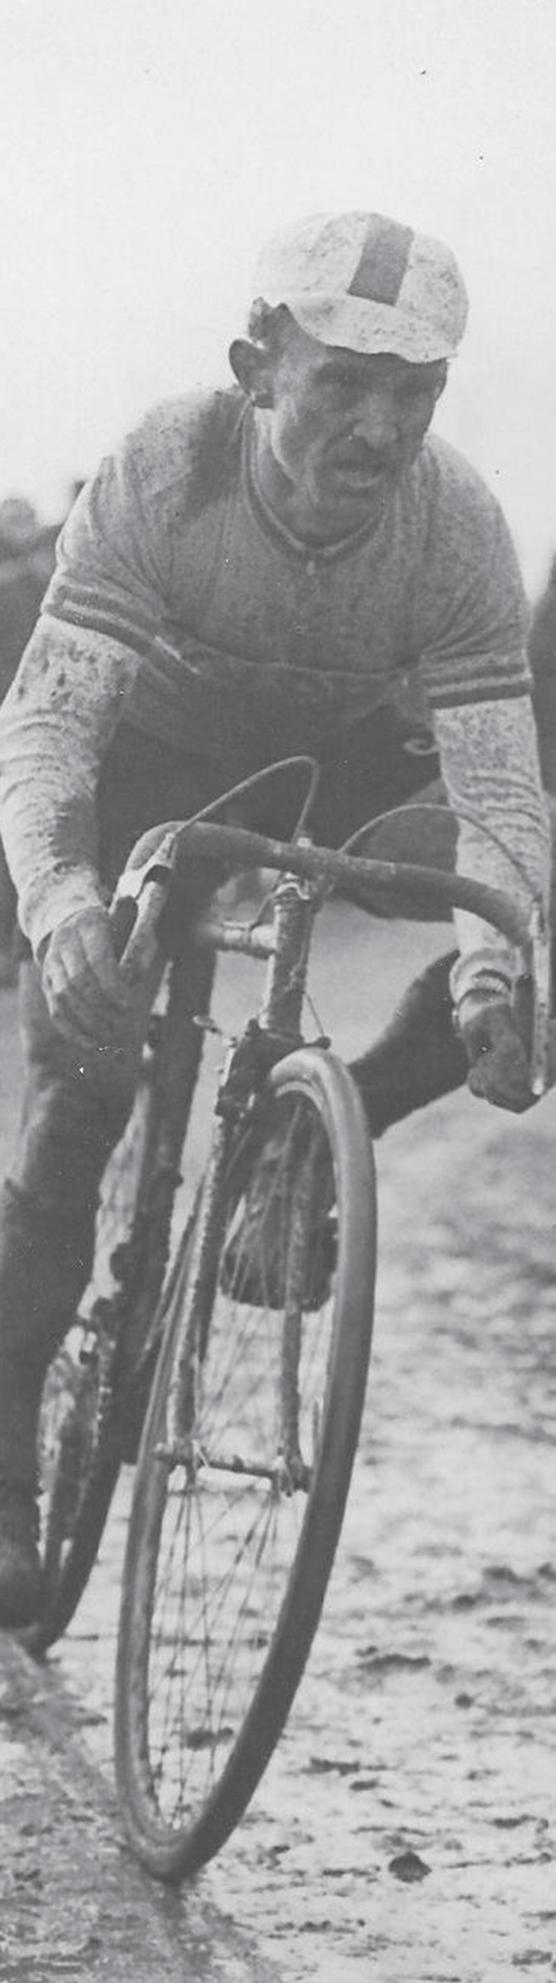 Actualité 9 Évènement Course Souvenir Jean Robic Petits et grands amateurs de cyclisme, c est à Wissous que ça se passe! En 1947, Jean Robic surnommé "Biquet" gagnait le Tour de France.